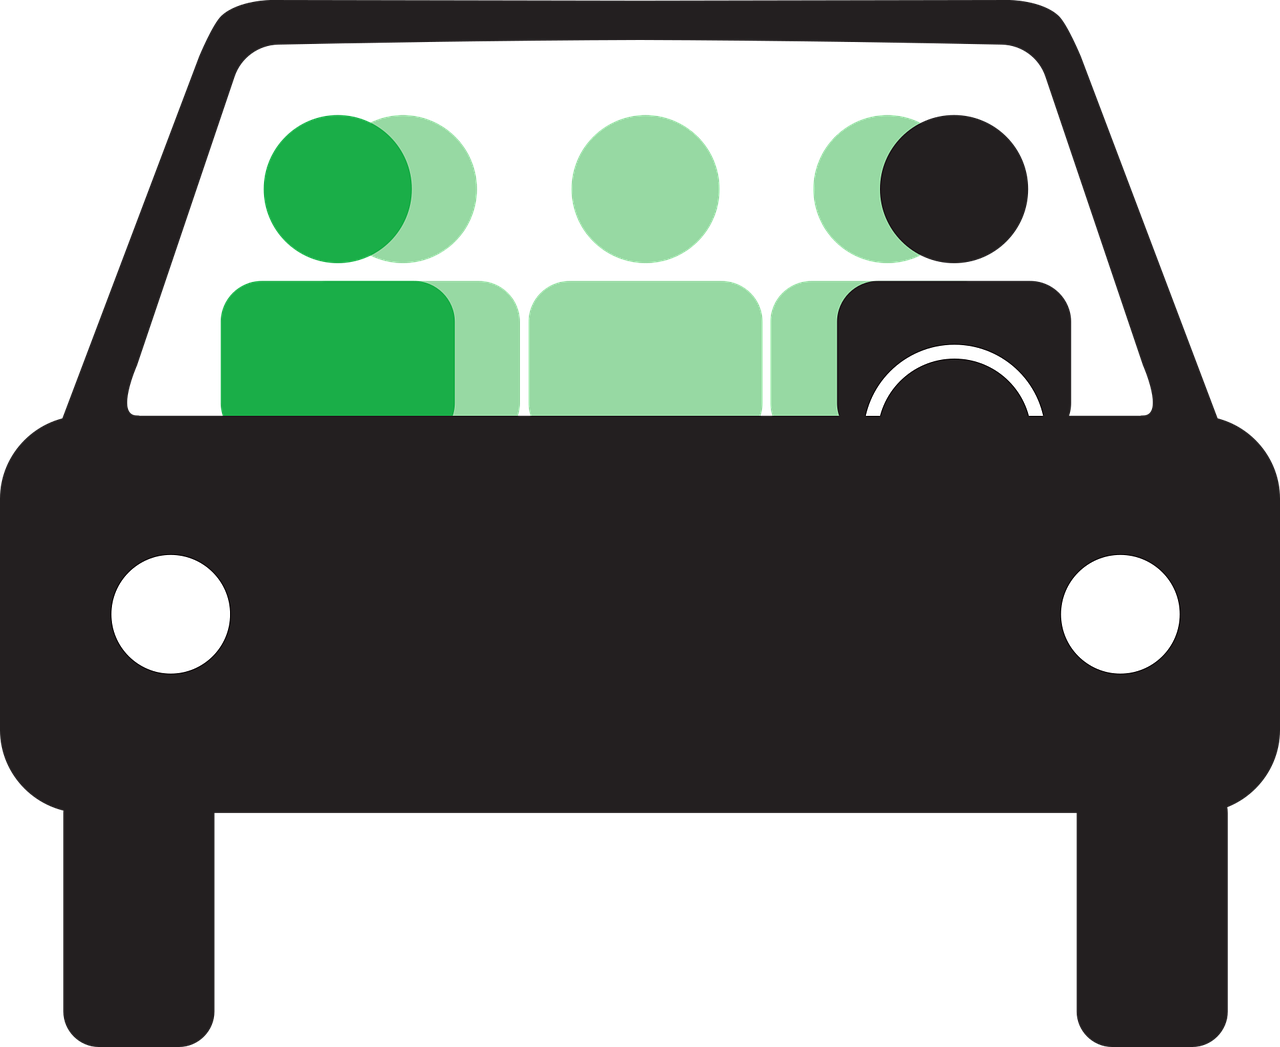 Figurer i grönt och svart i en svart bil